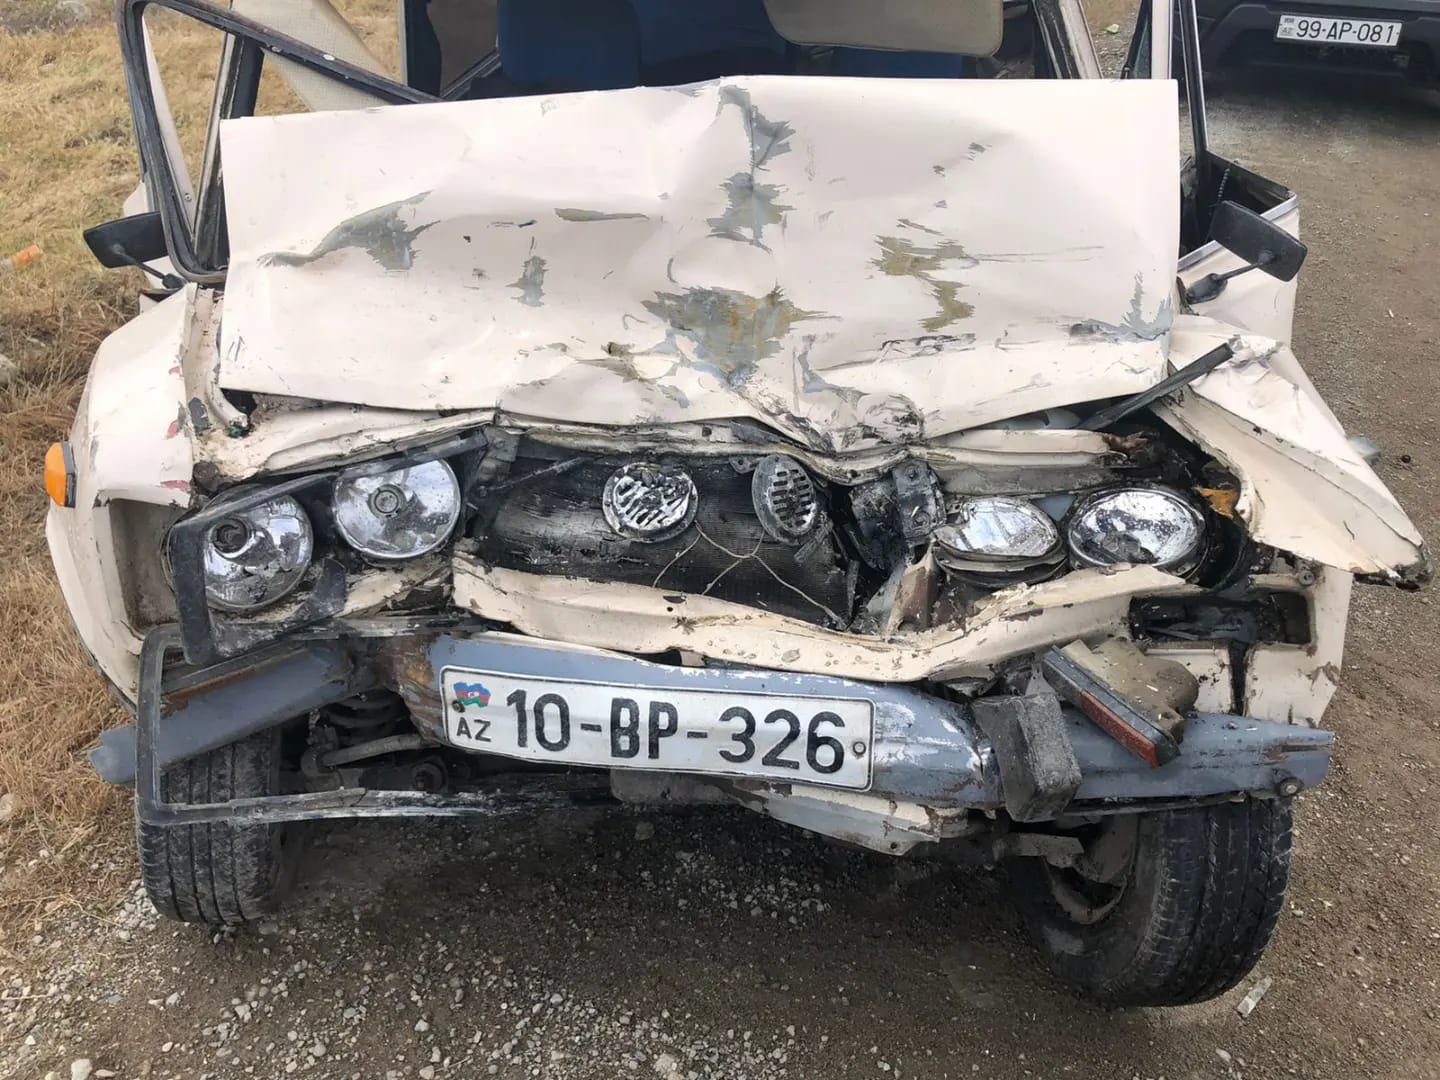 Bakı-Quba yolunda DƏHŞƏTLİ QƏZA: Ata və azyaşlı qızı öldü - FOTO